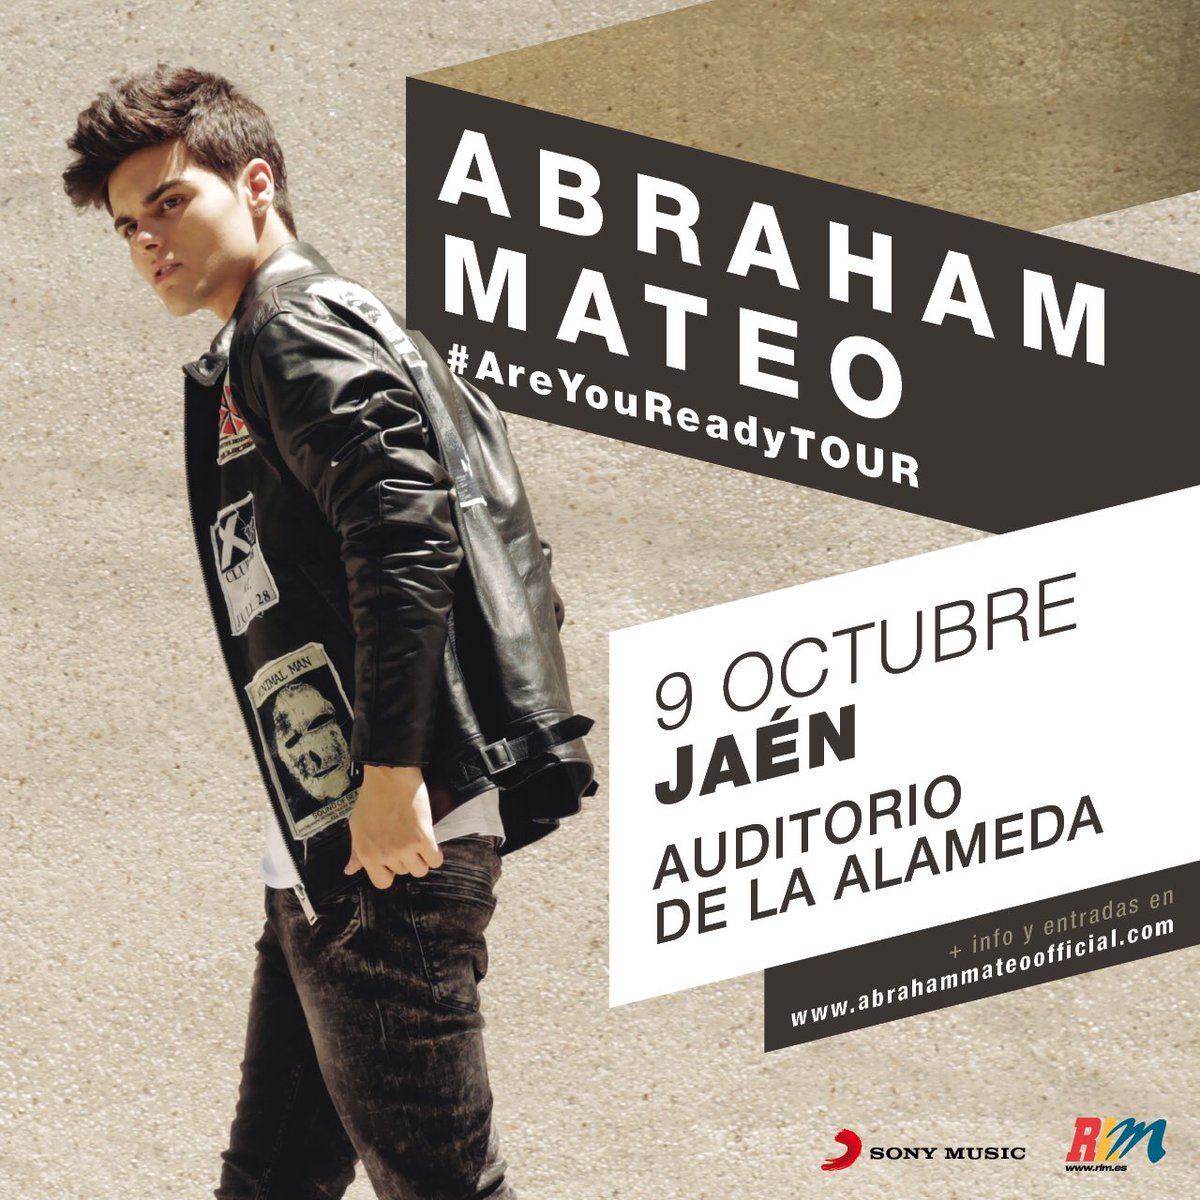 Concierto de Abraham Mateo en Jaén, España, Domingo, 09 de octubre de 2016